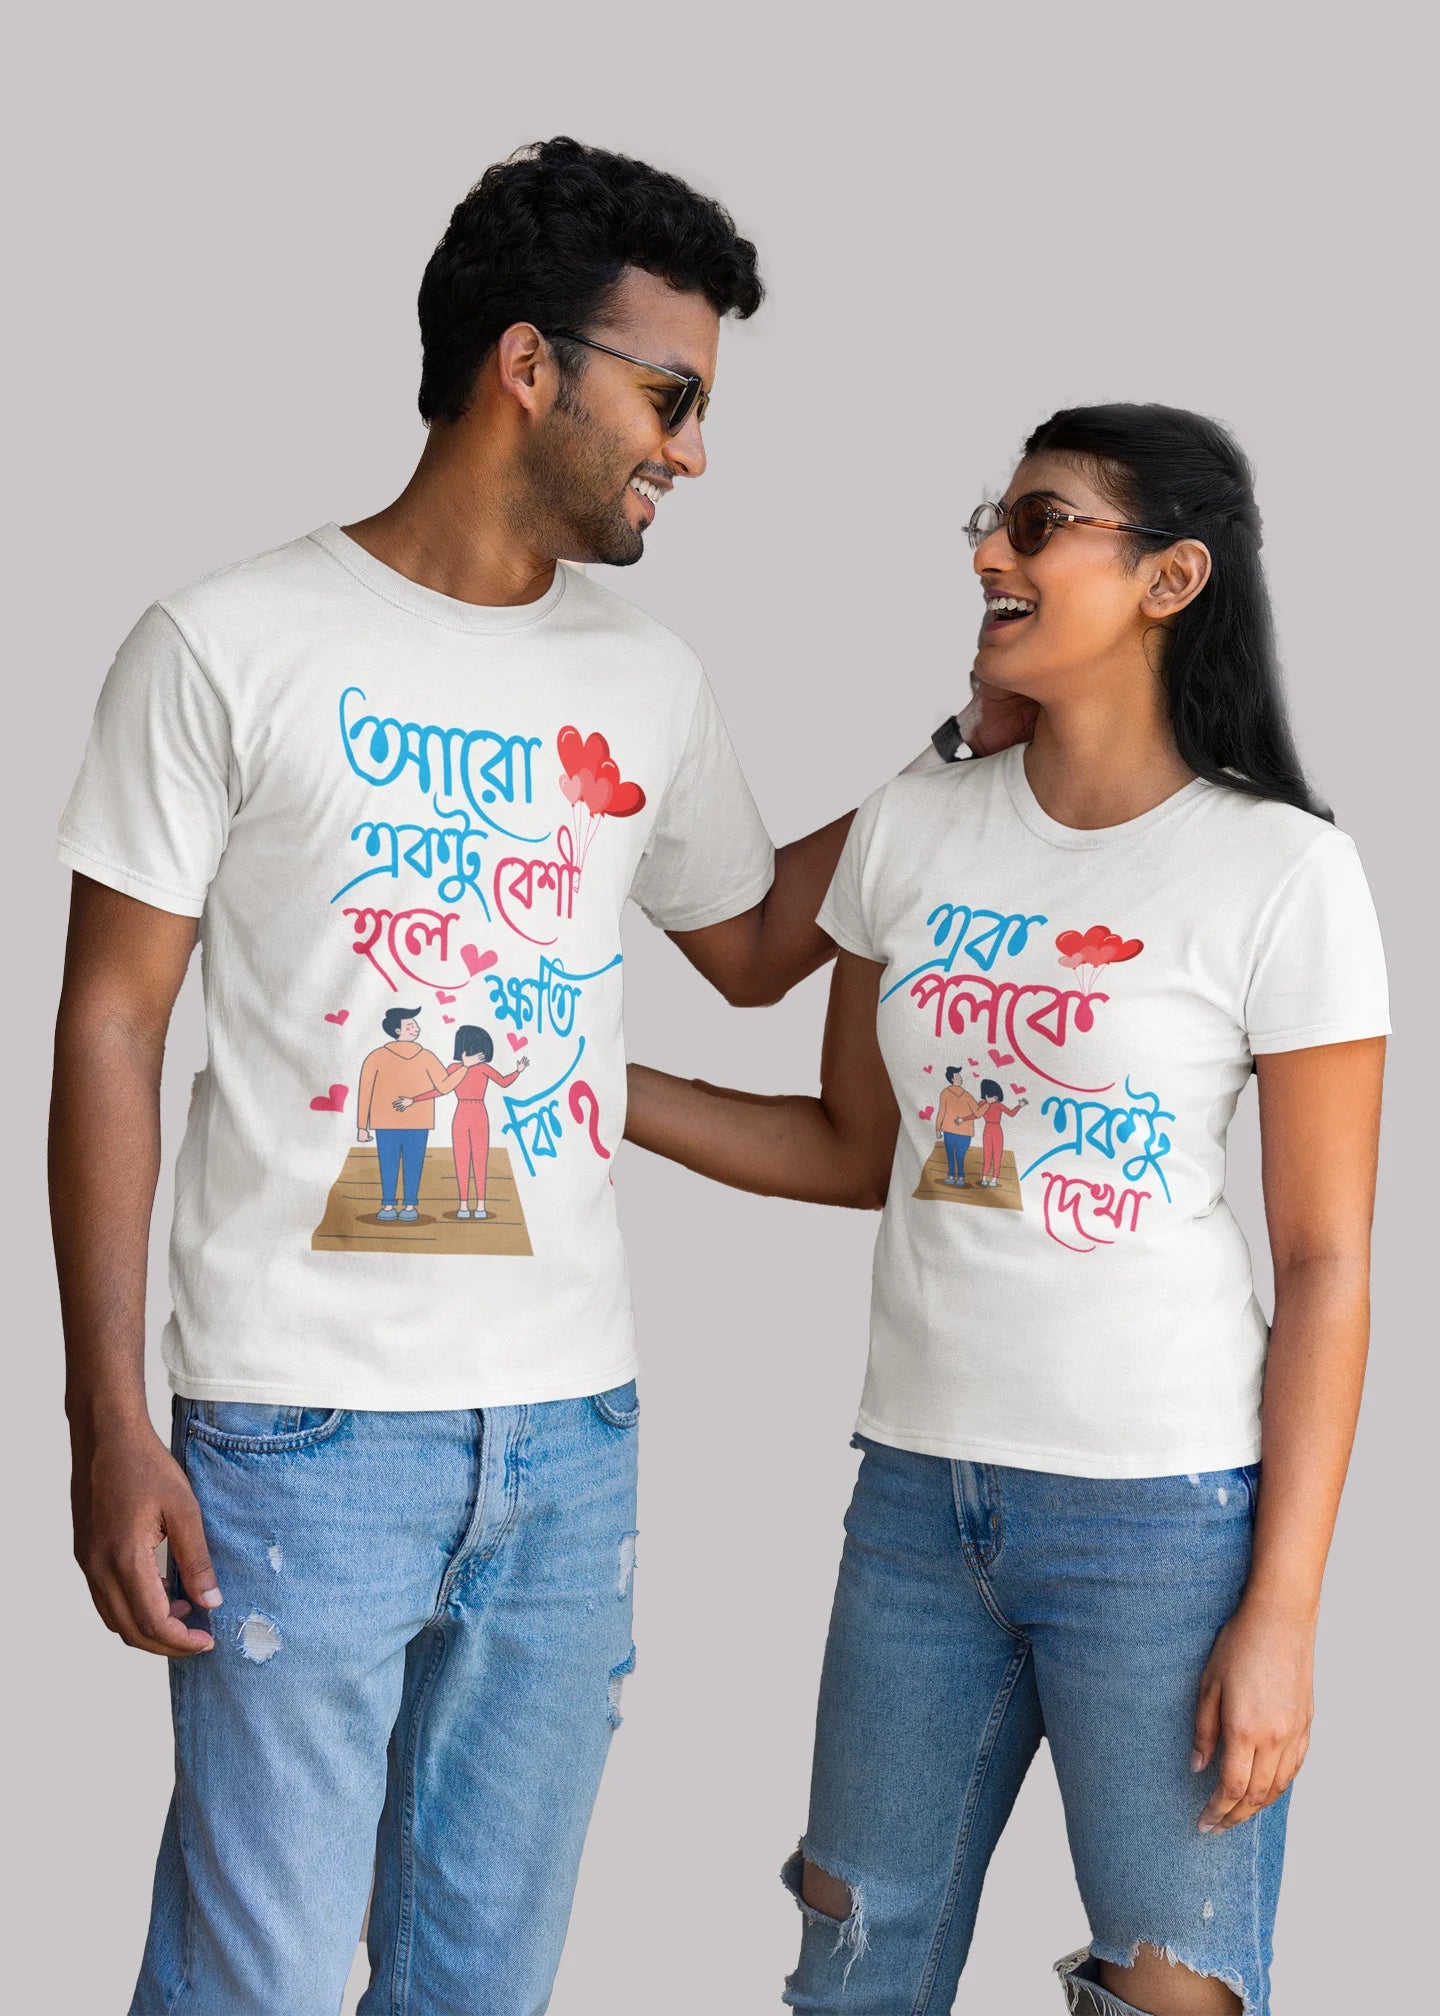 Ek poloke ektu dekha bengali Printed Couple T-shirt